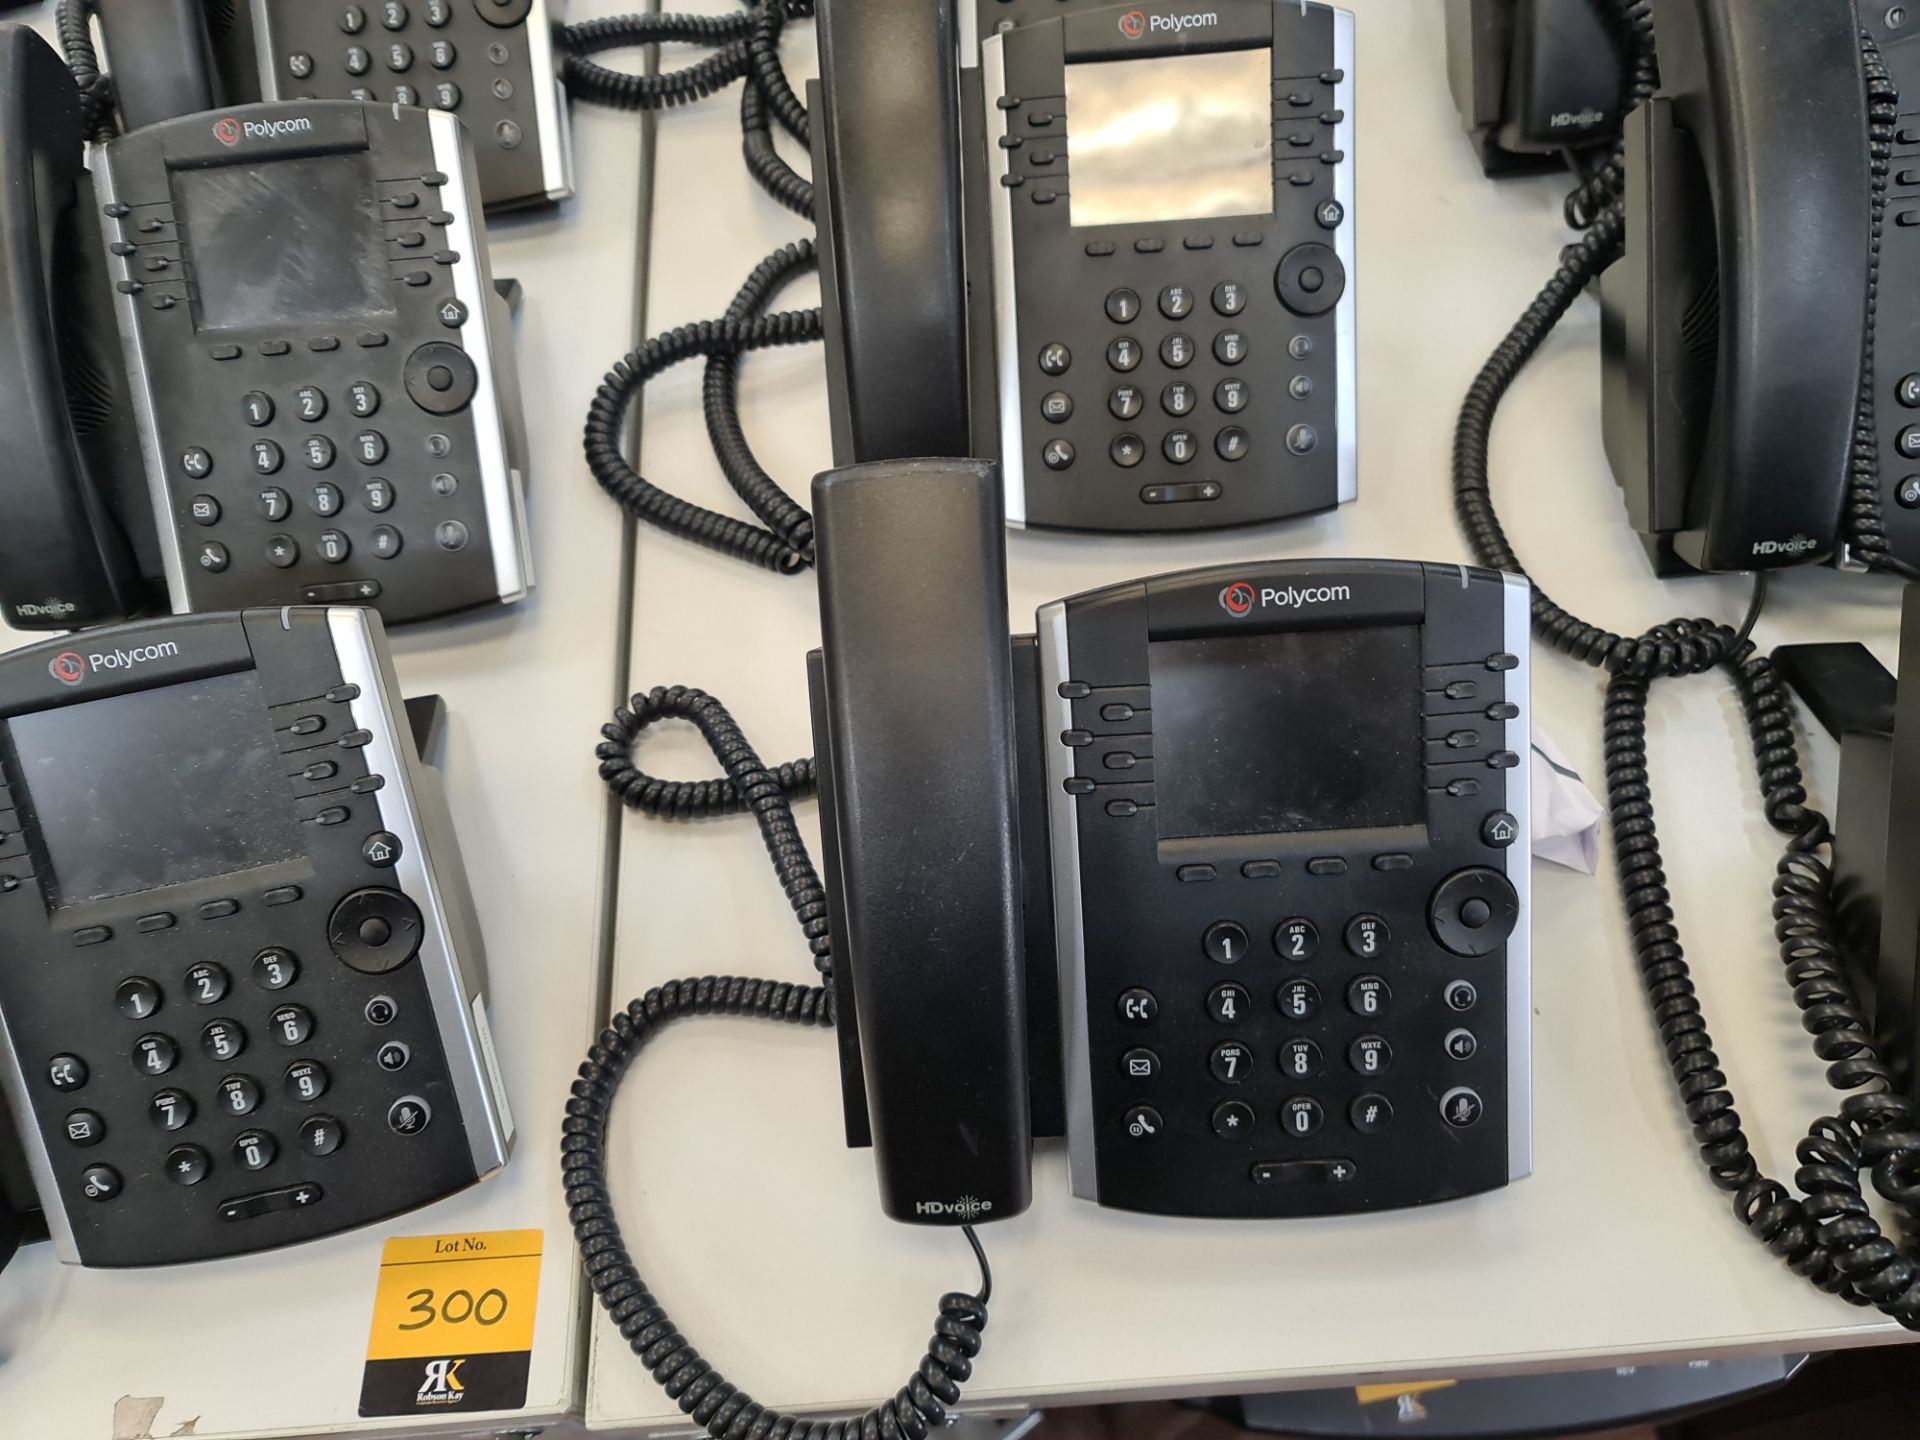 12 off Polycom model VVX411 telephone handsets - Image 5 of 7